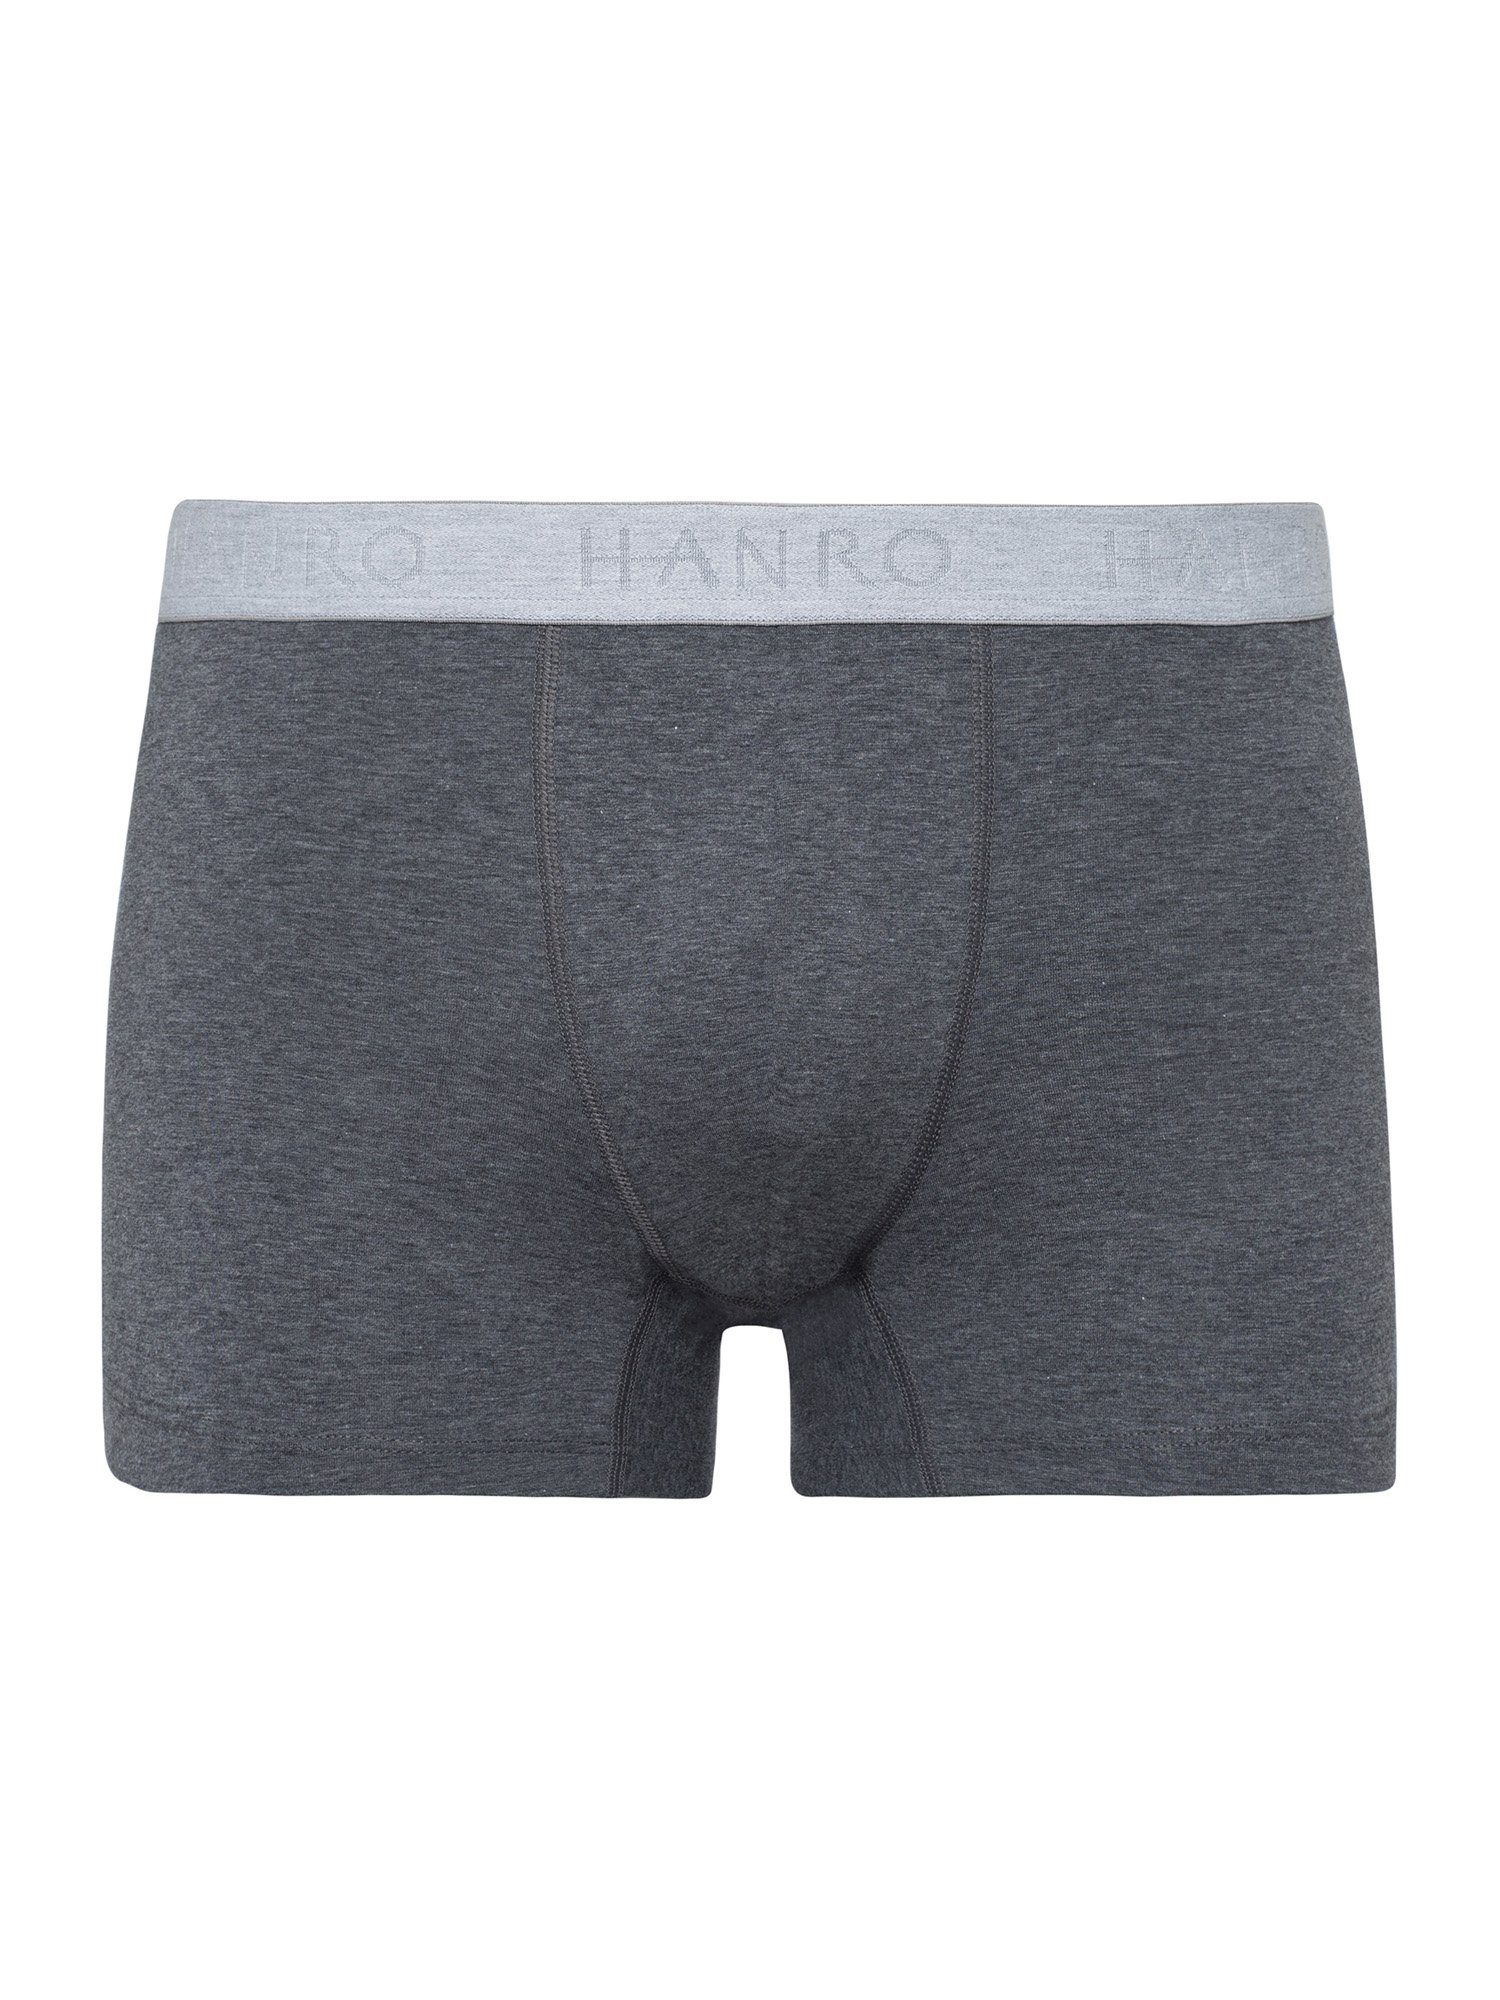 Pants 2-Pack Hanro Essentials Retro Cotton melange coal